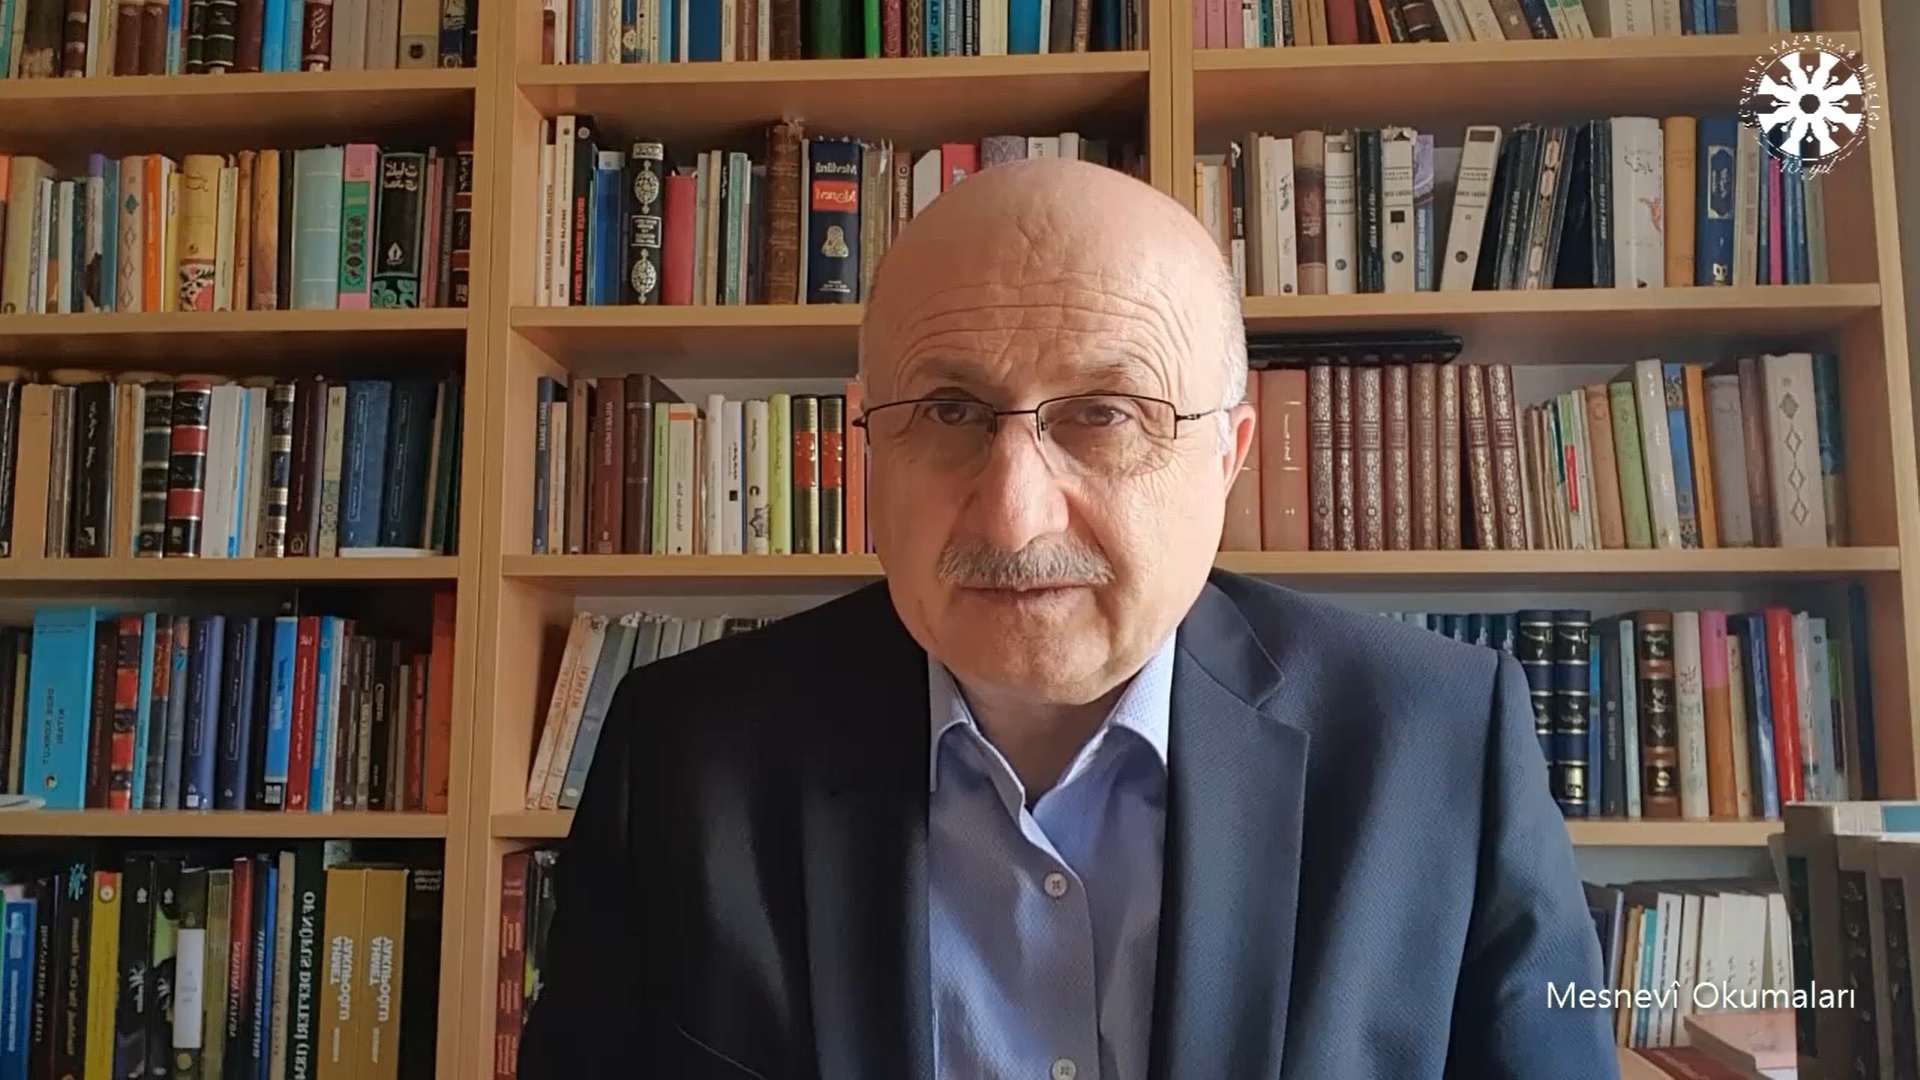 Mesnevî Okumaları -108- Prof. Dr. Adnan Karaismailoğlu